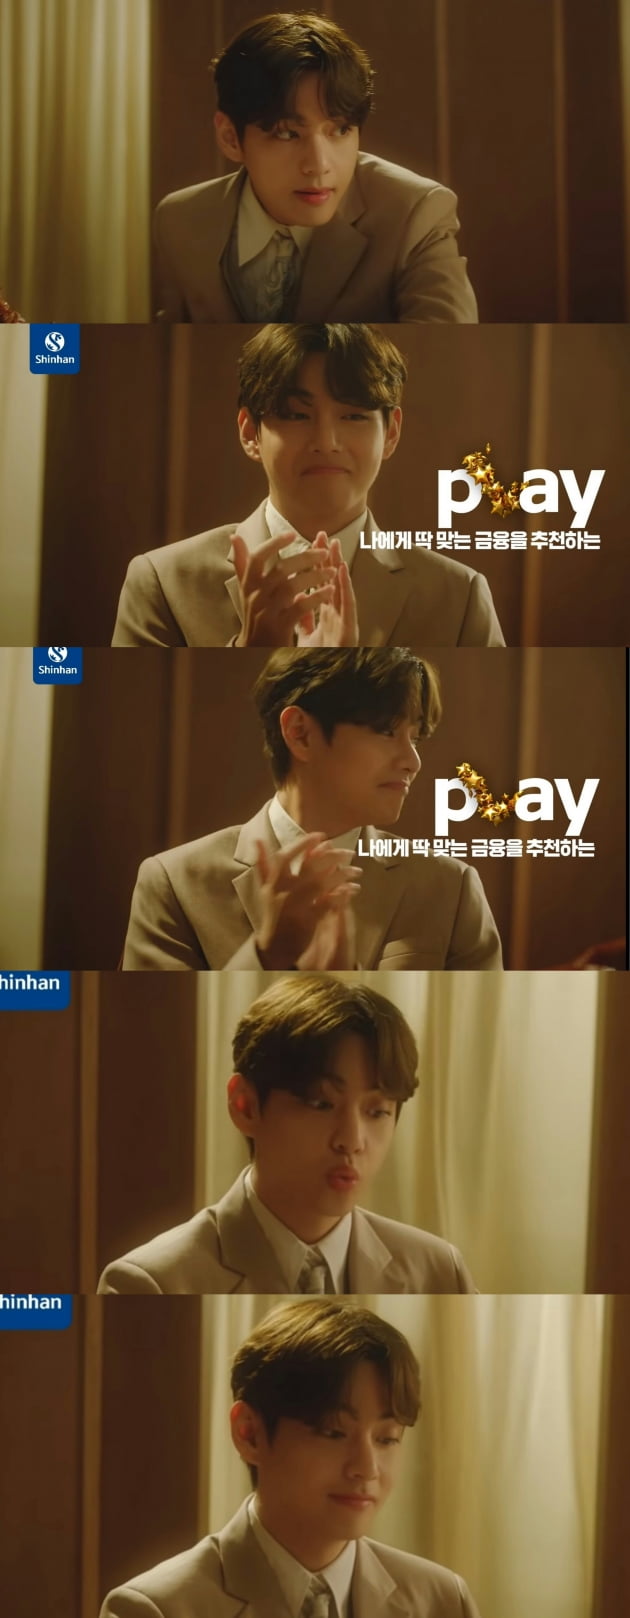 방탄소년단 뷔, 황태자 비주얼를 빛나게한 '신한 PLAY'...완벽한 금융광고의 완성